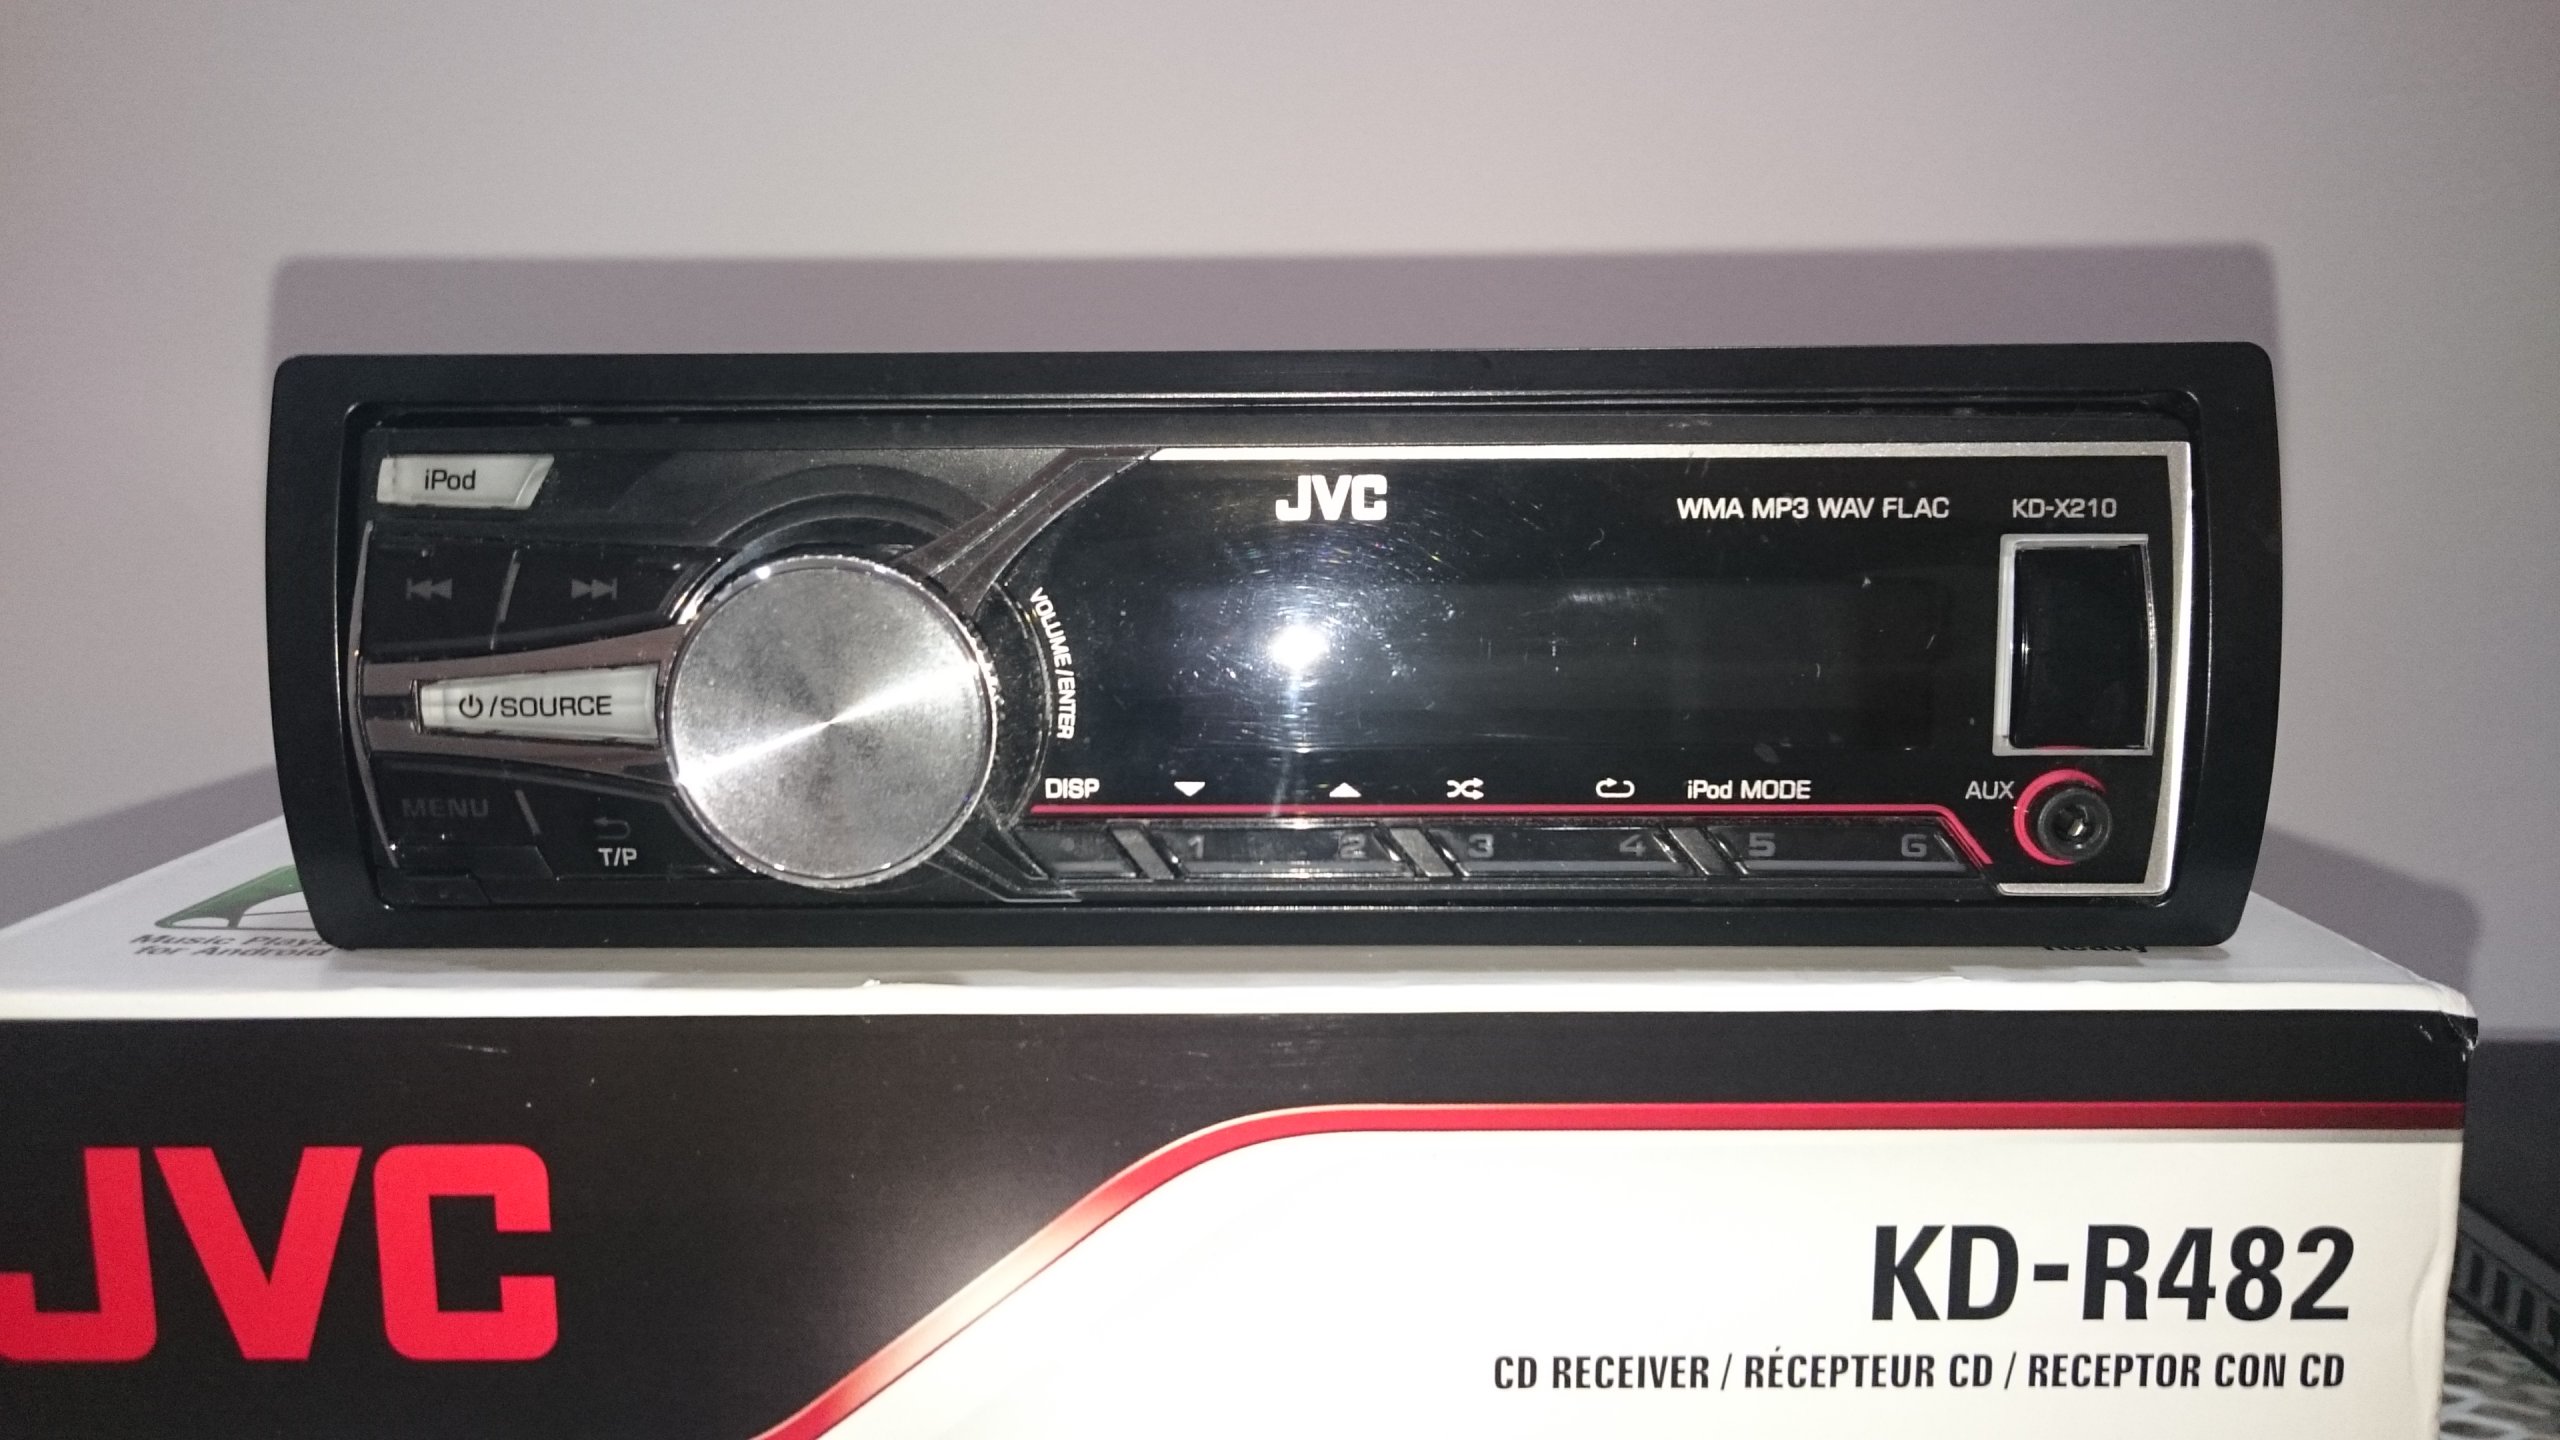 Radio JVC KD-X210 USB/AUX/iPod/MP3 - 7063900935 - oficjalne archiwum Allegro